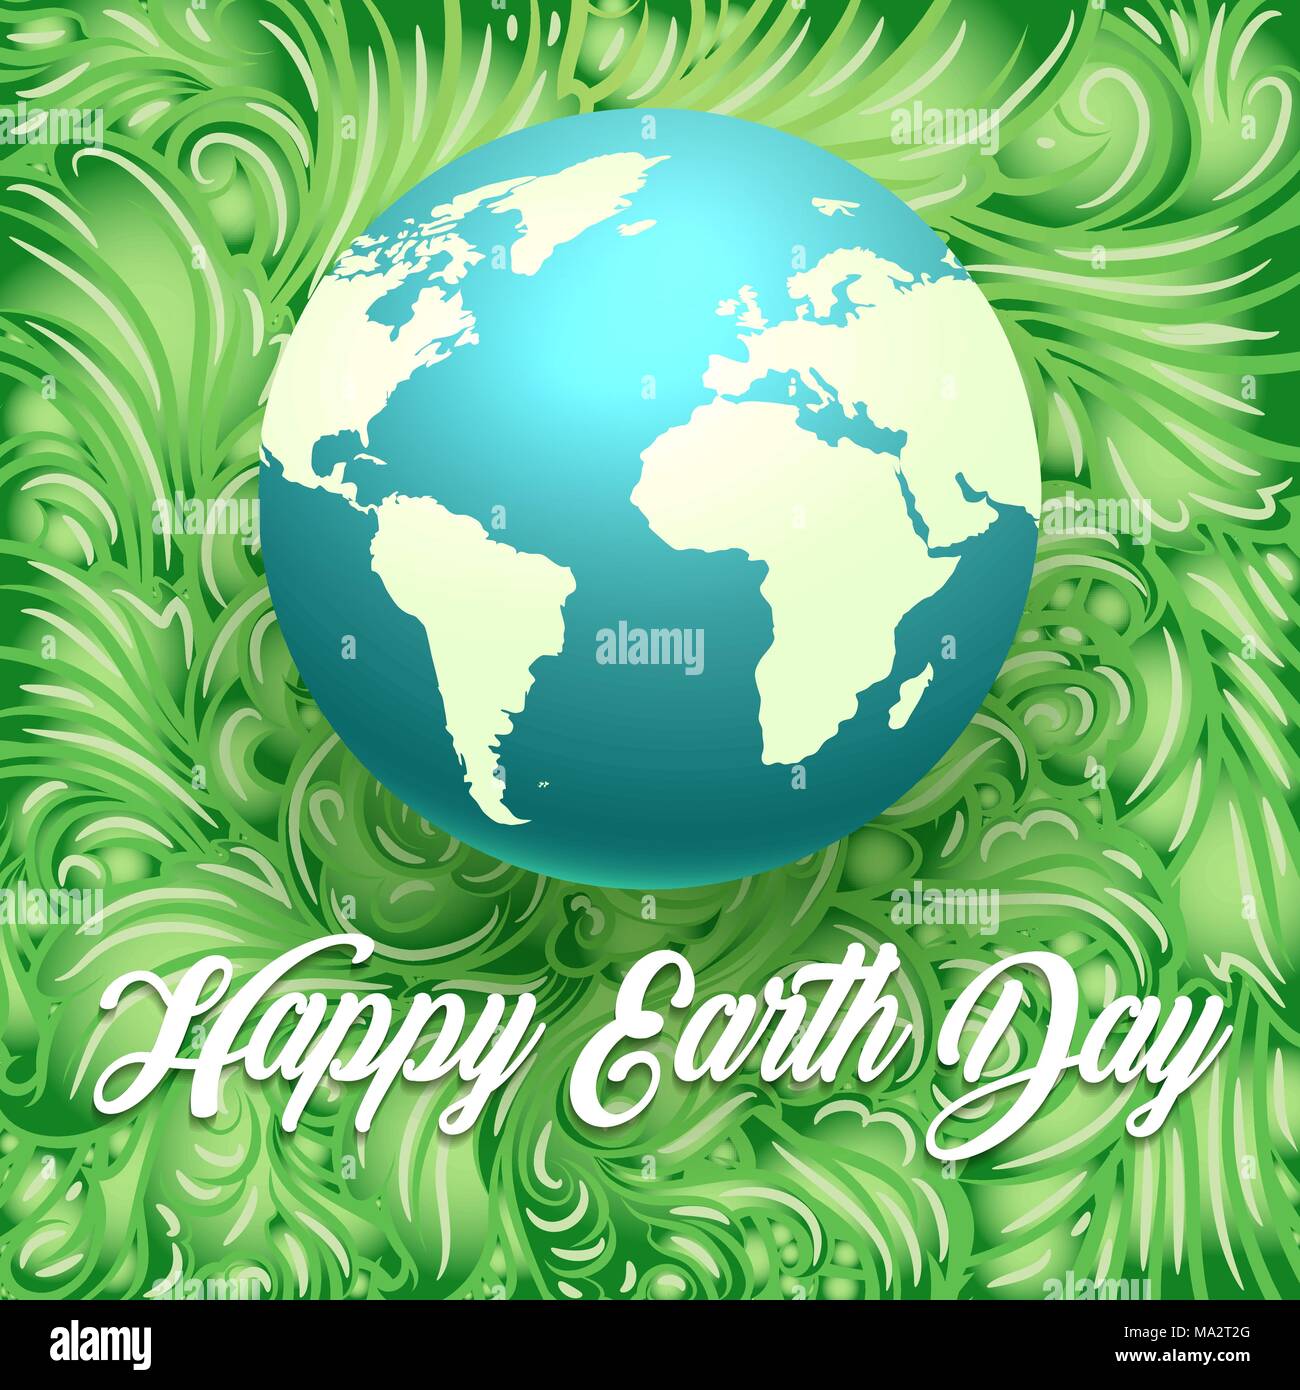 Happy Earth Day Abbildung. Globus mit den Worten Happy Earth Day auf grüne Blätter Hintergrund. Vector Illustration. Stock Vektor